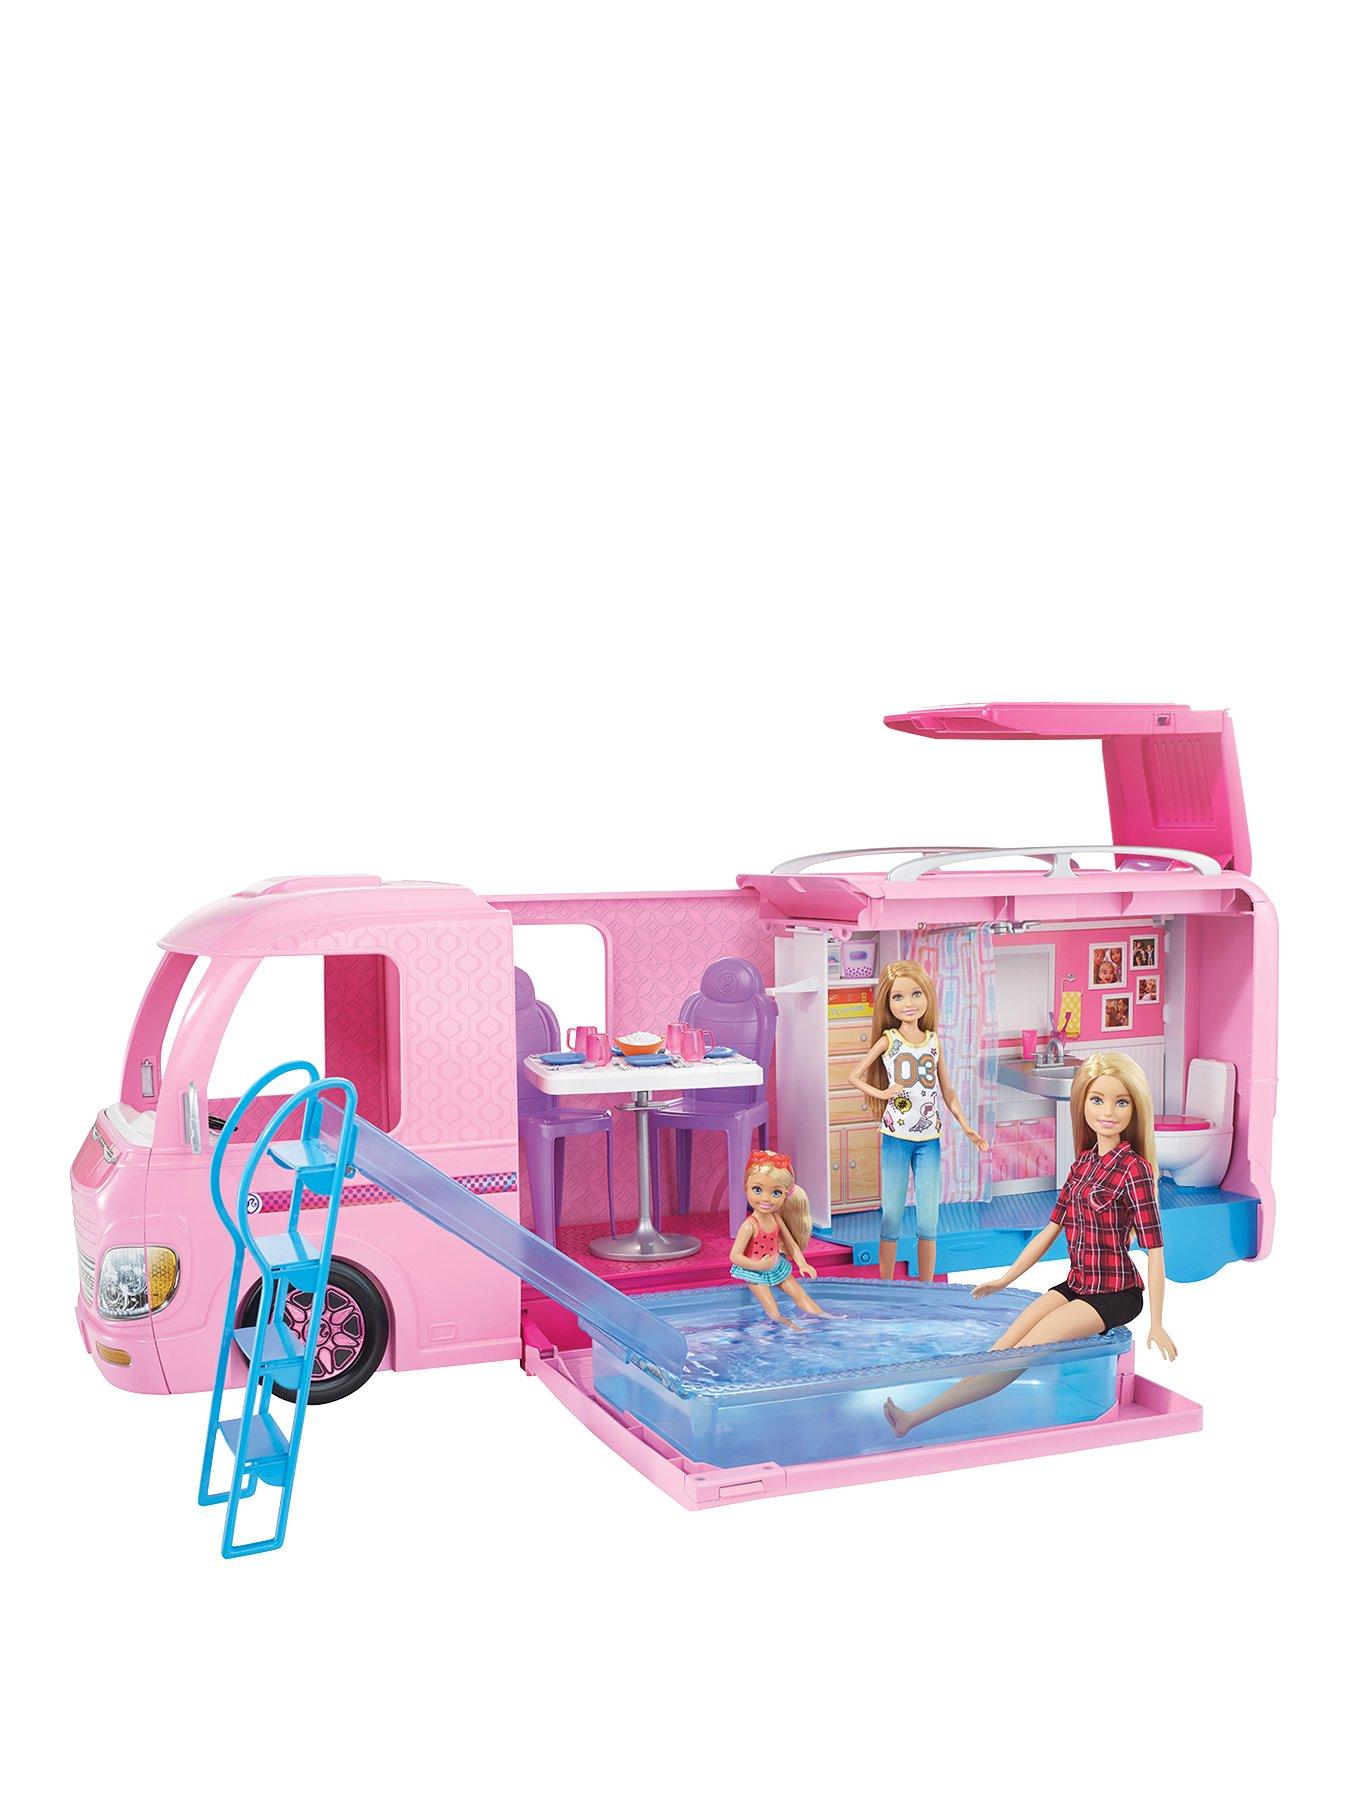 new barbie camper van